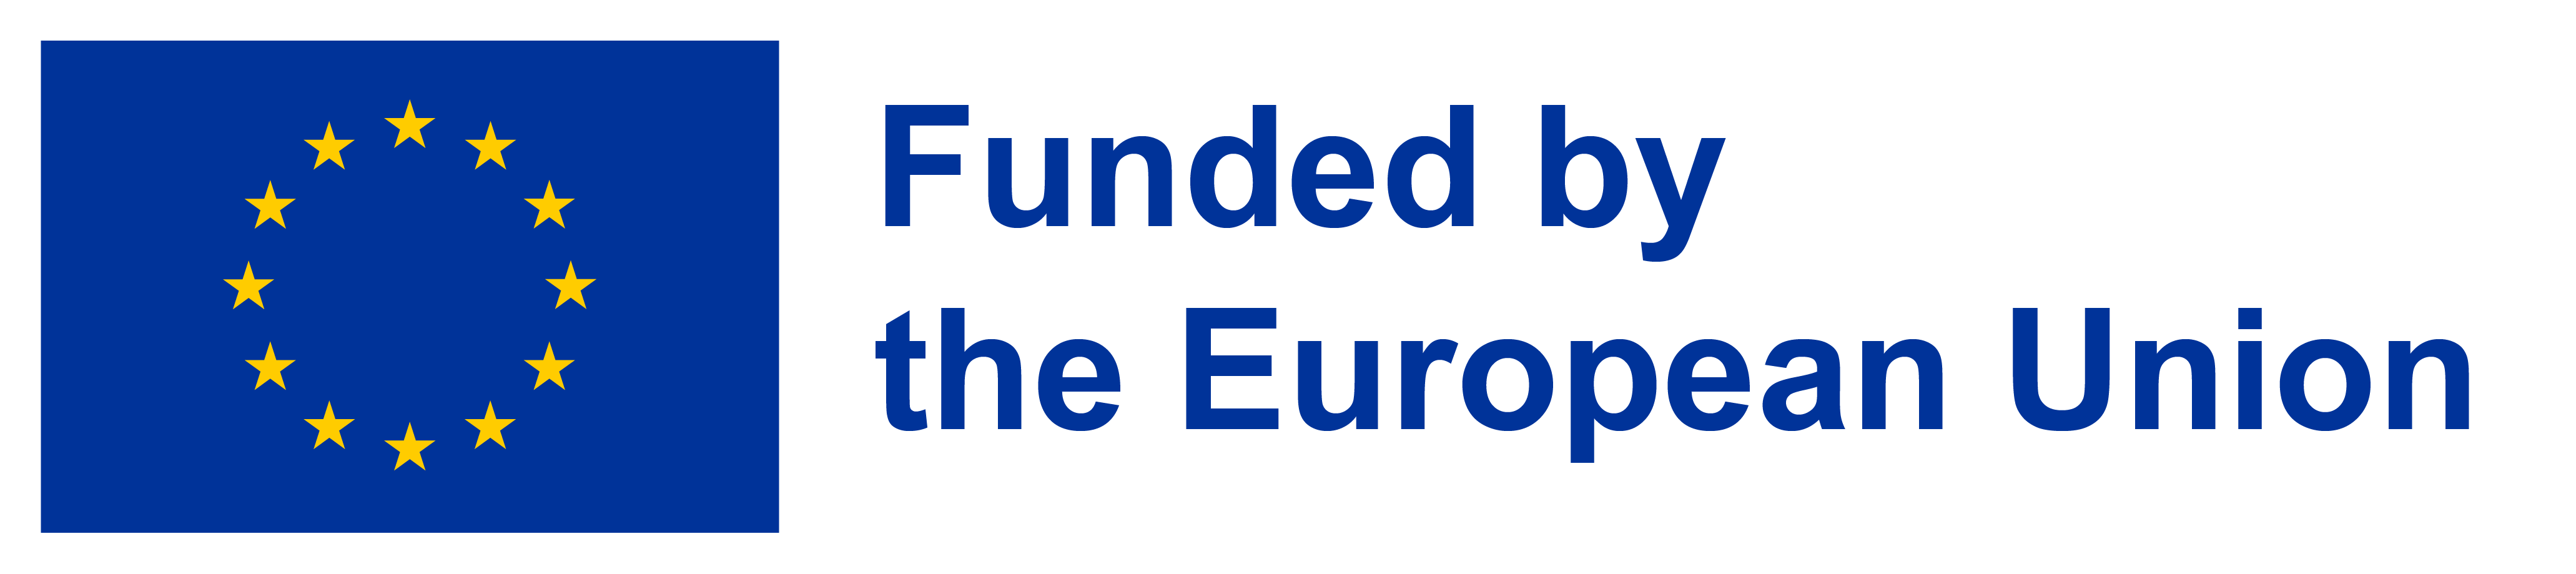 EU funded logo